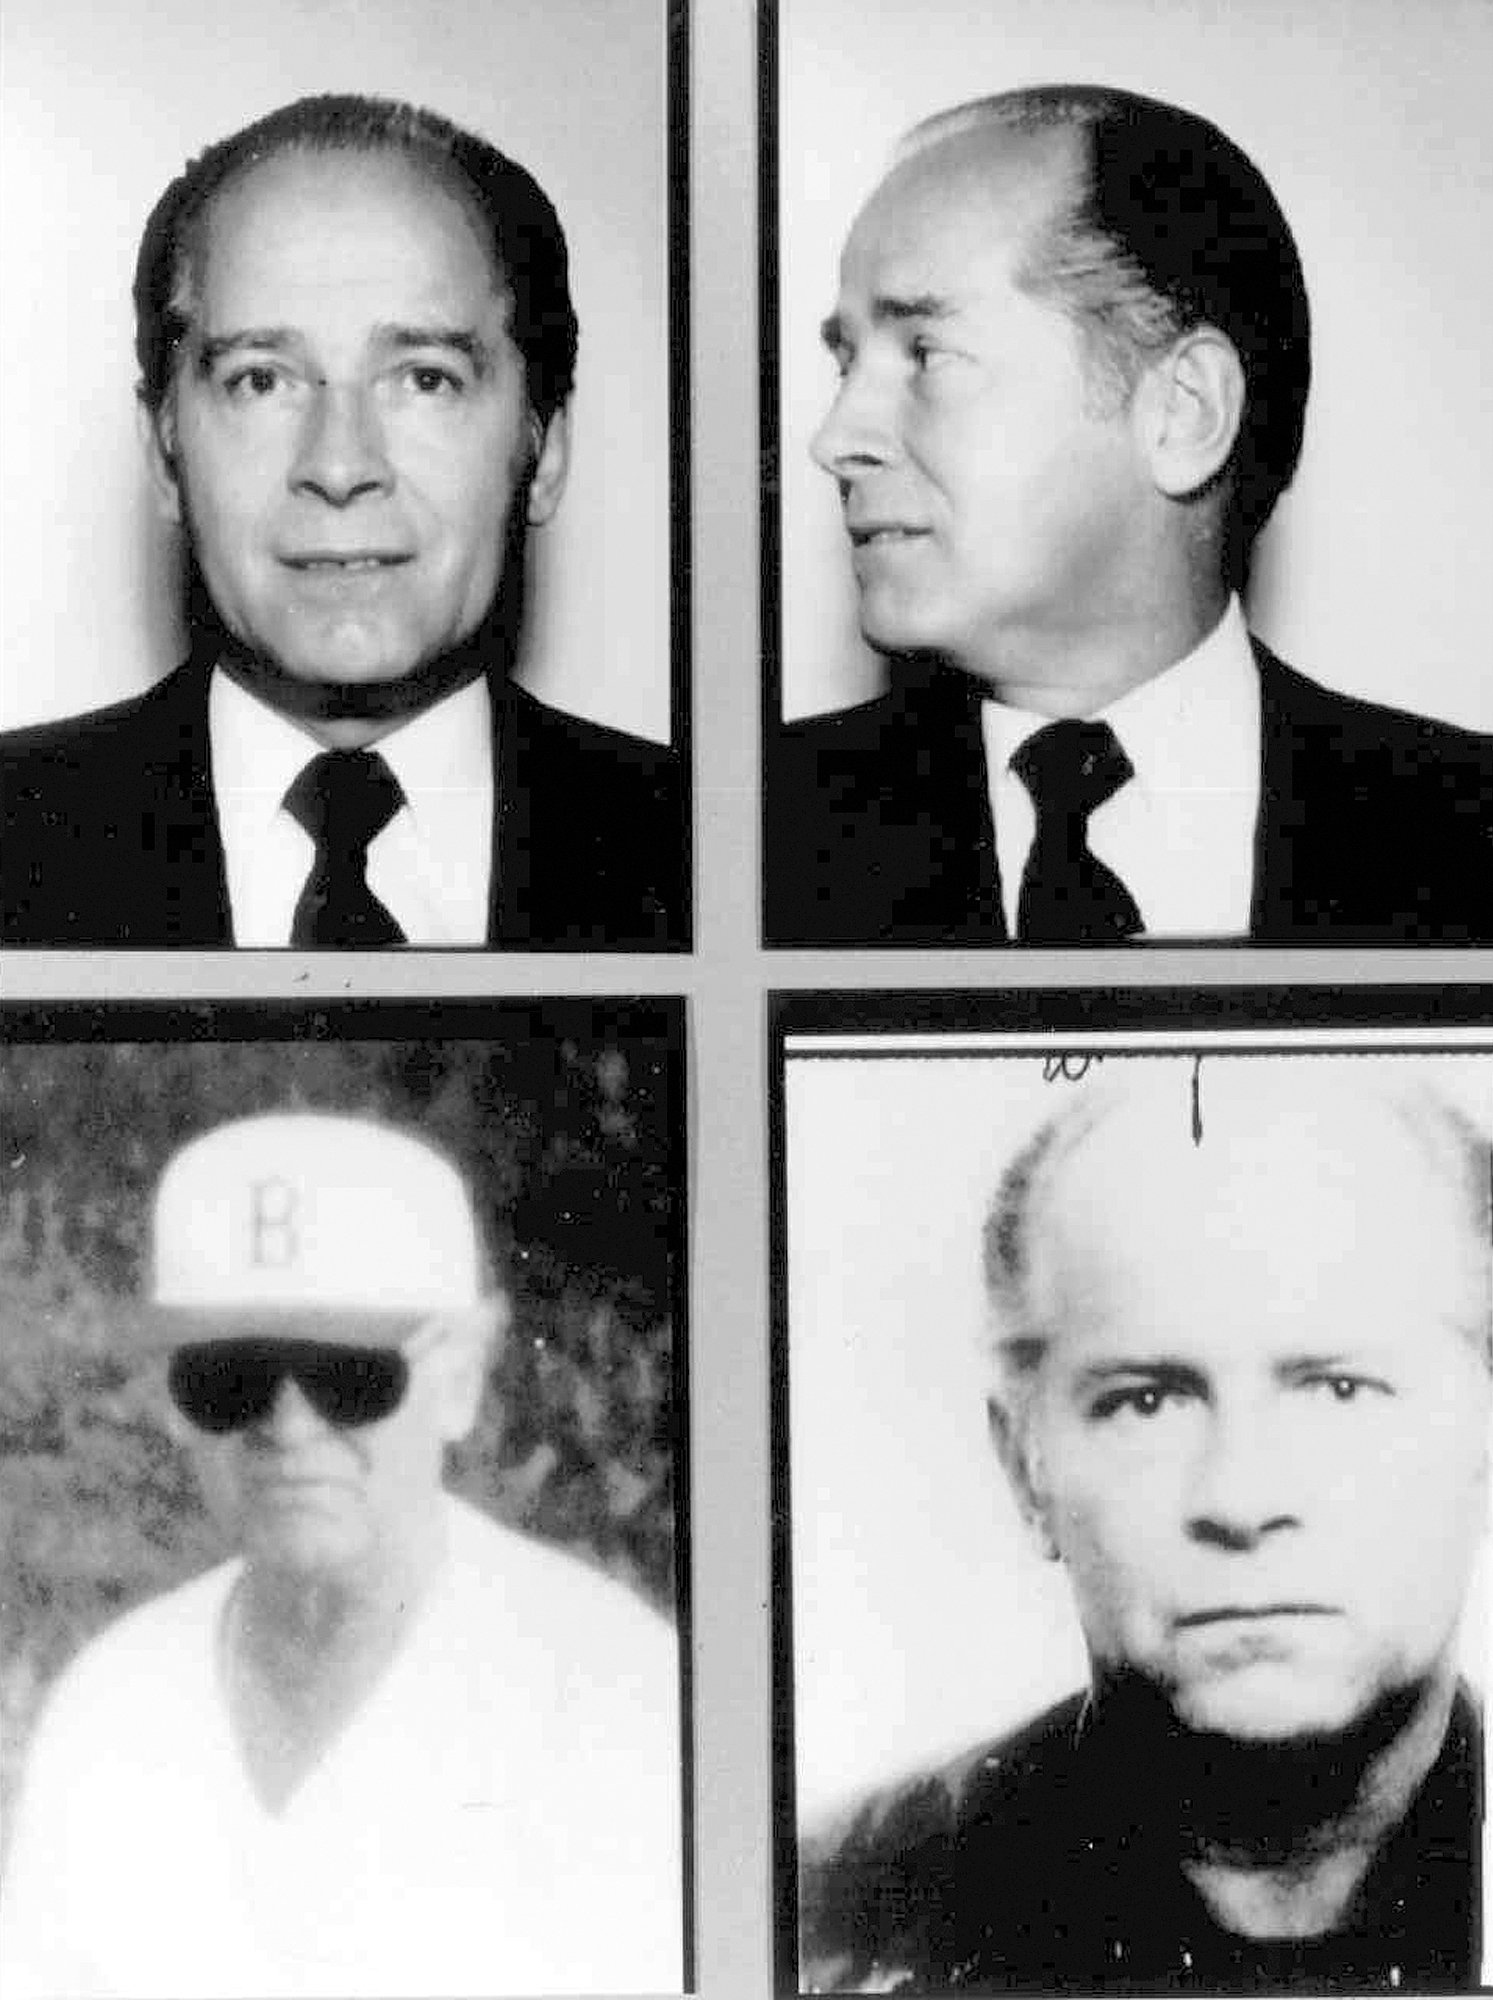 Massachusetts mobster James "Whitey" Bulger.